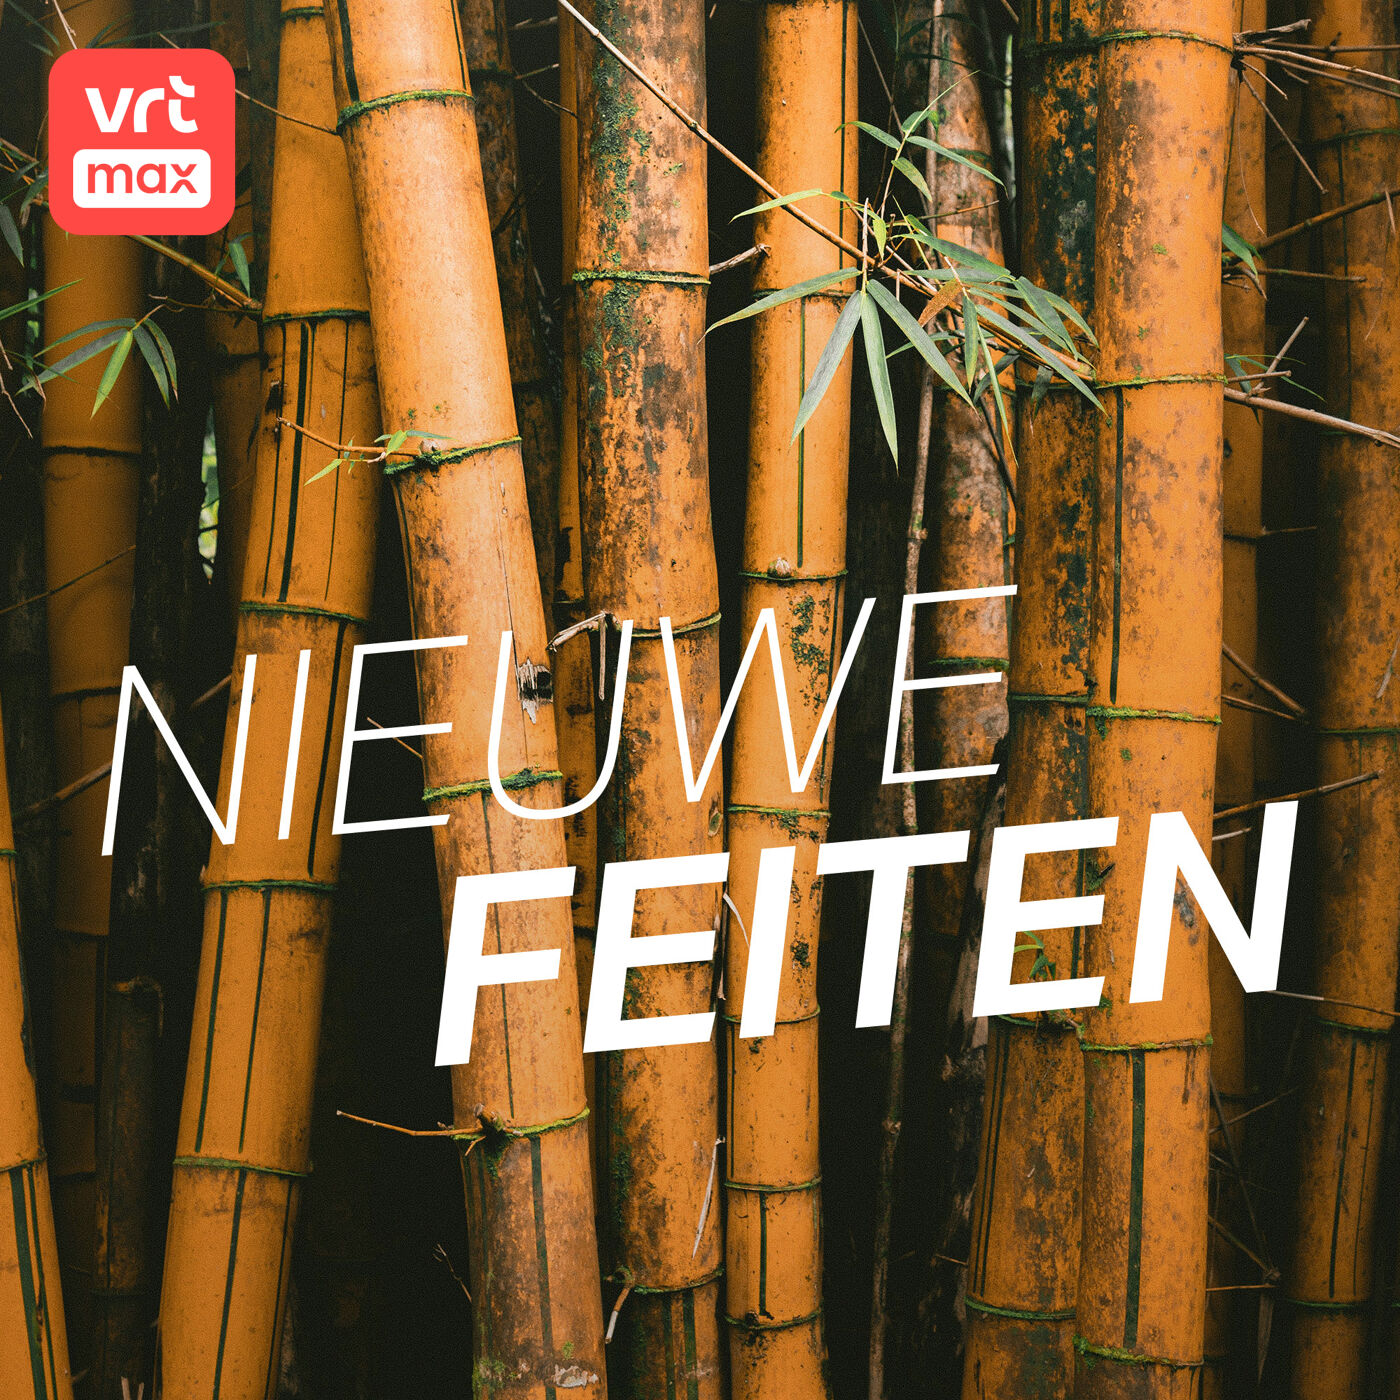 Europese boeren investeren in bamboebossen